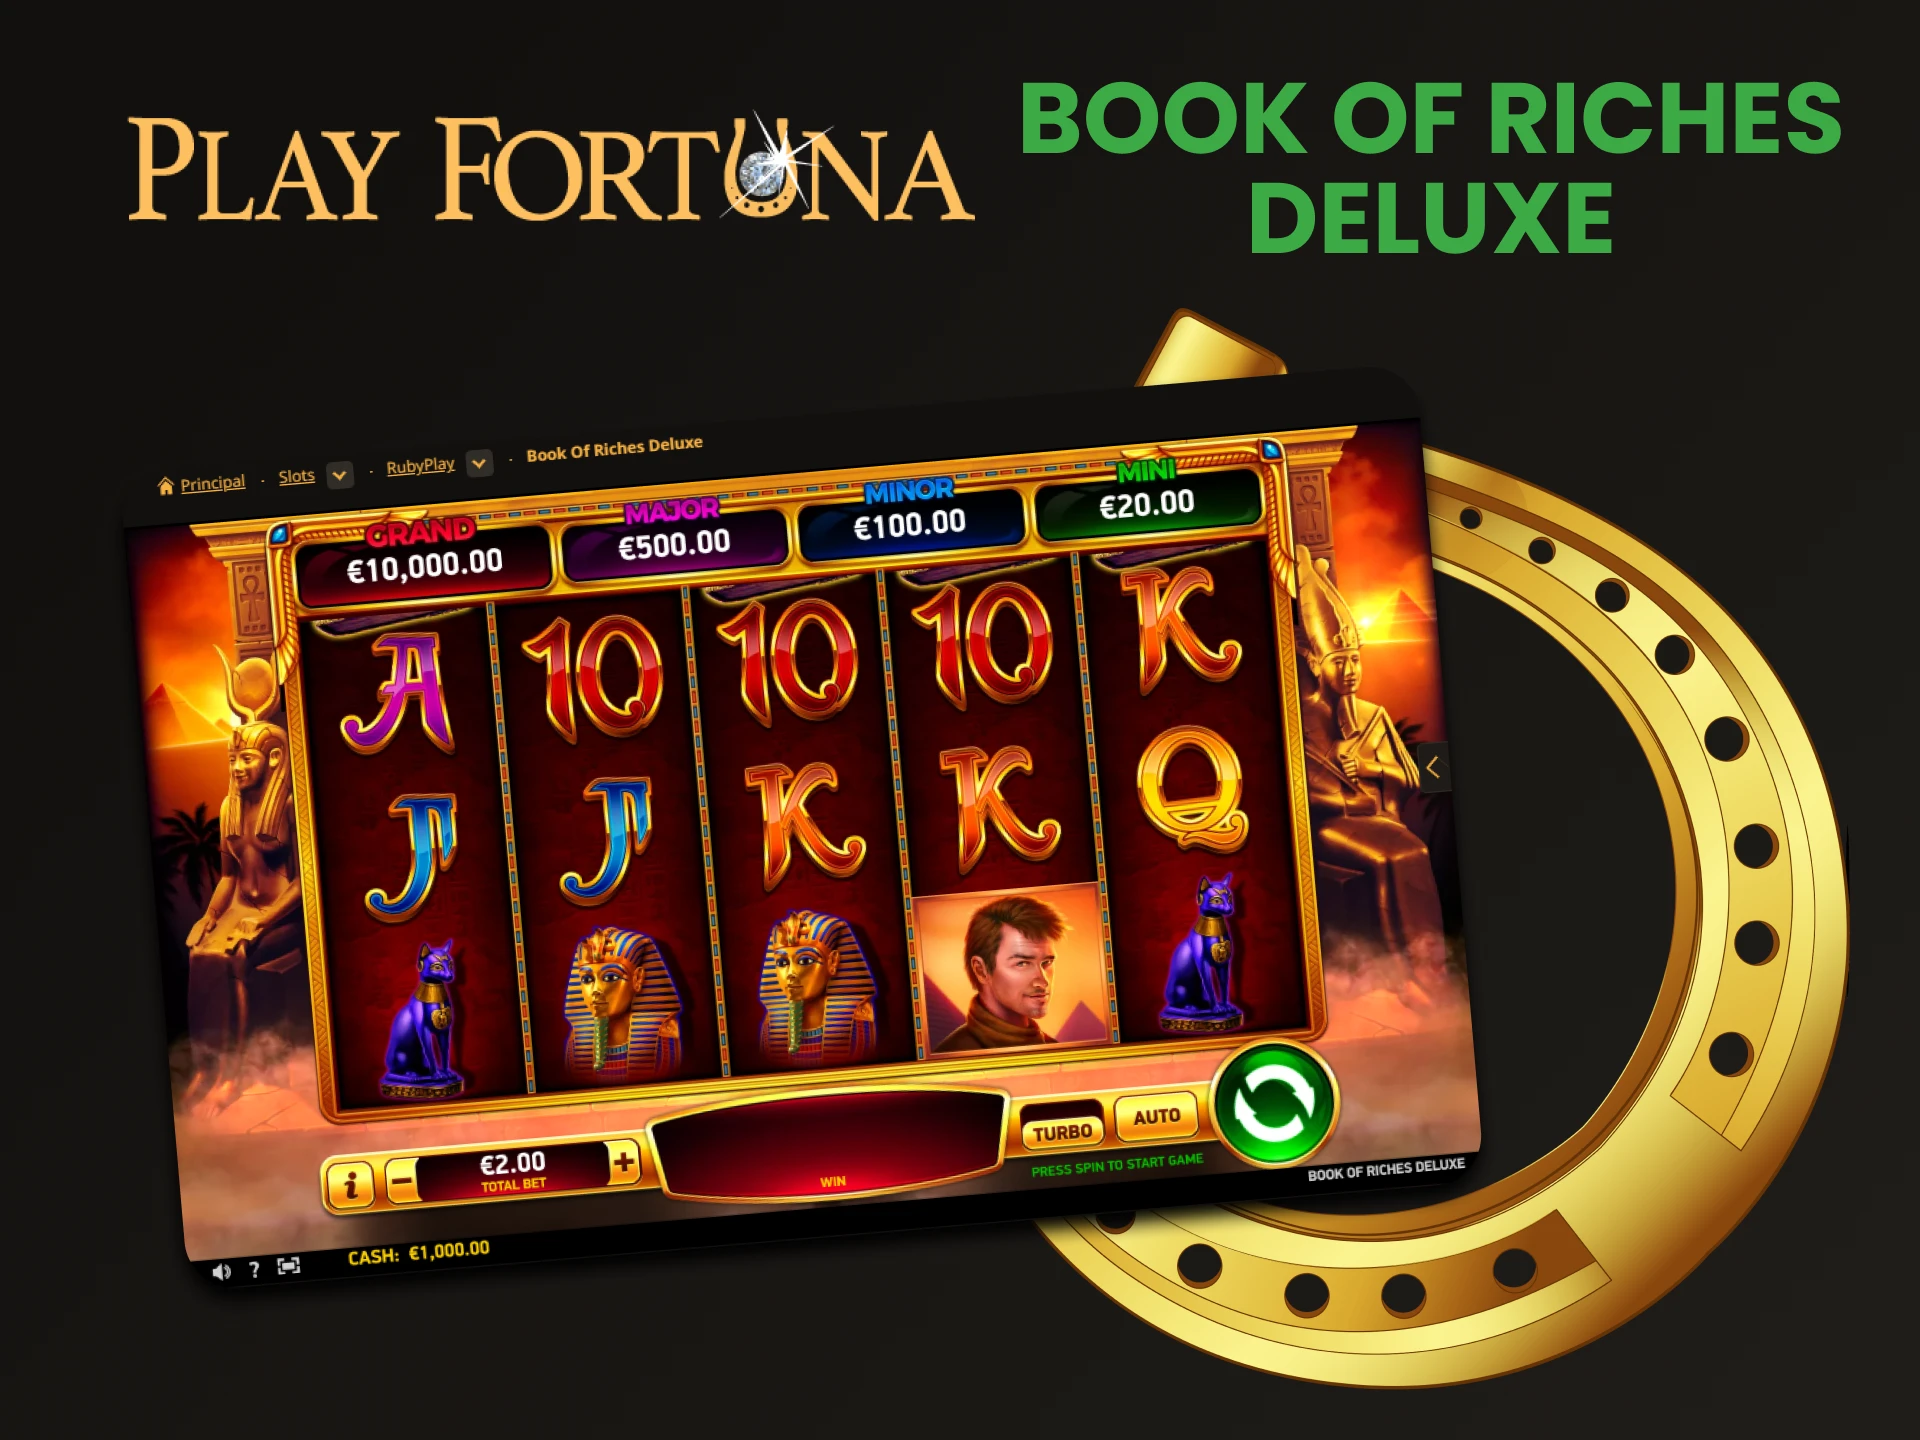 Jogue Book of Riches Deluxe na seção de jackpot do Play Fortuna.